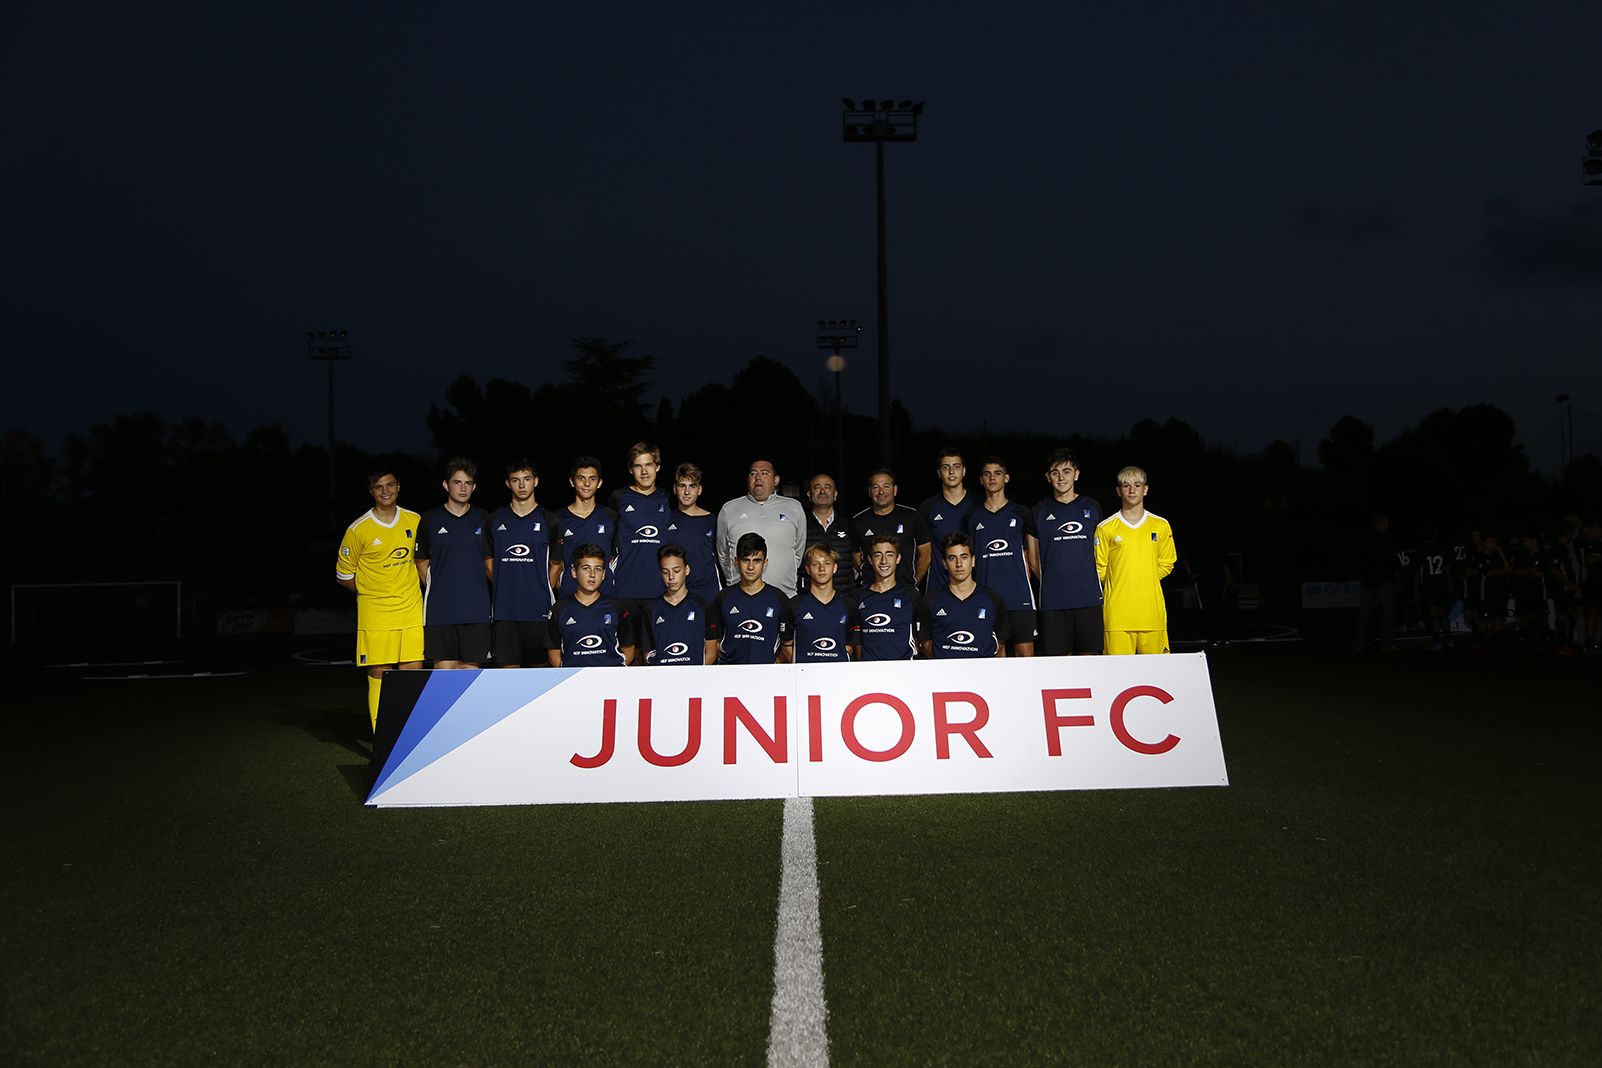 Esportistes a la Presentació Futbol Junior FC 2019. FOTO: Anna Bassa